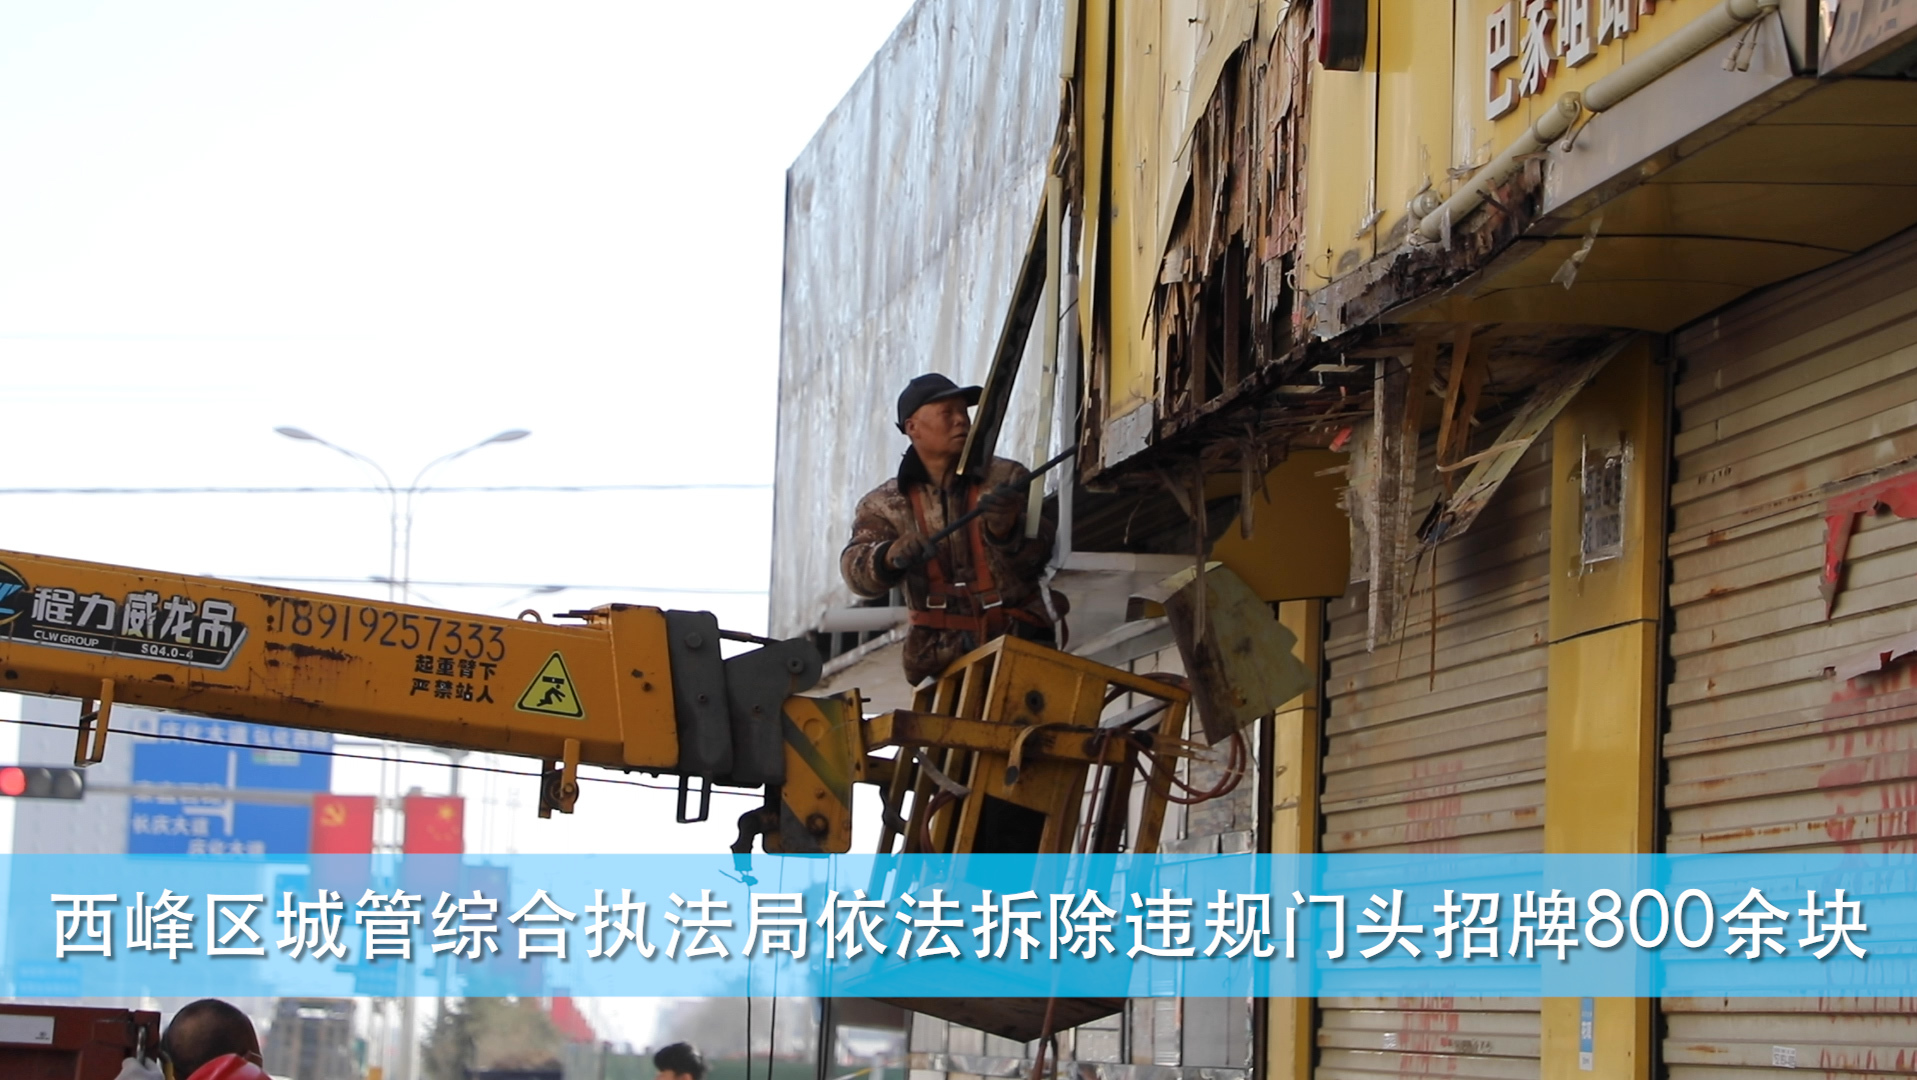 【庆阳视频】西峰区城管综合执法局依法拆除违规门头招牌800余块